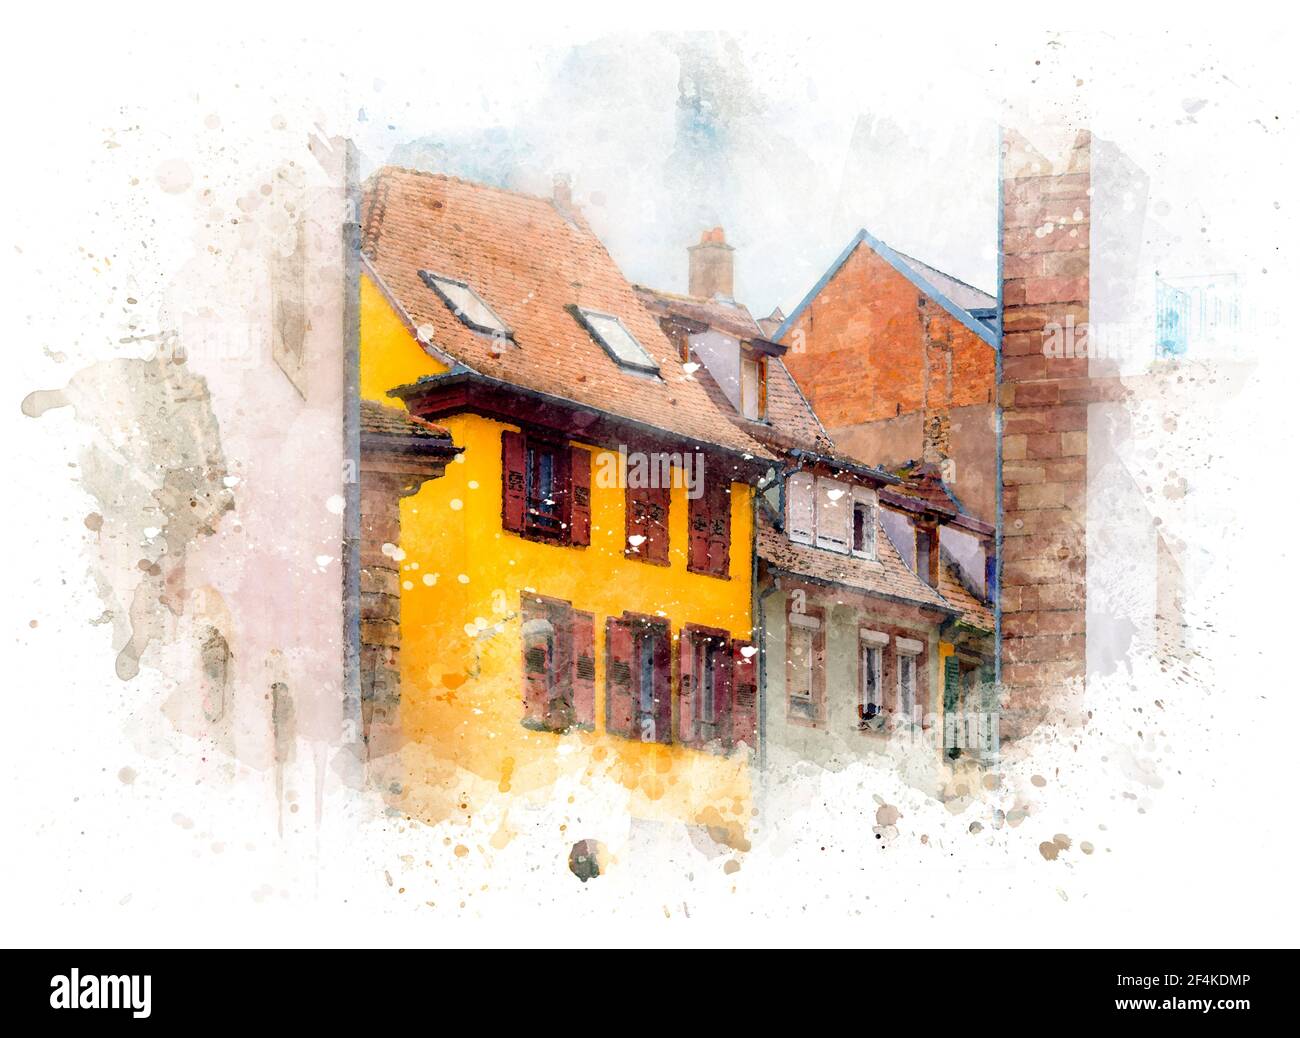 Vecchia strada medievale con case tradizionali francesi a Strasburgo, Francia. Illustrazione acquerello Foto Stock